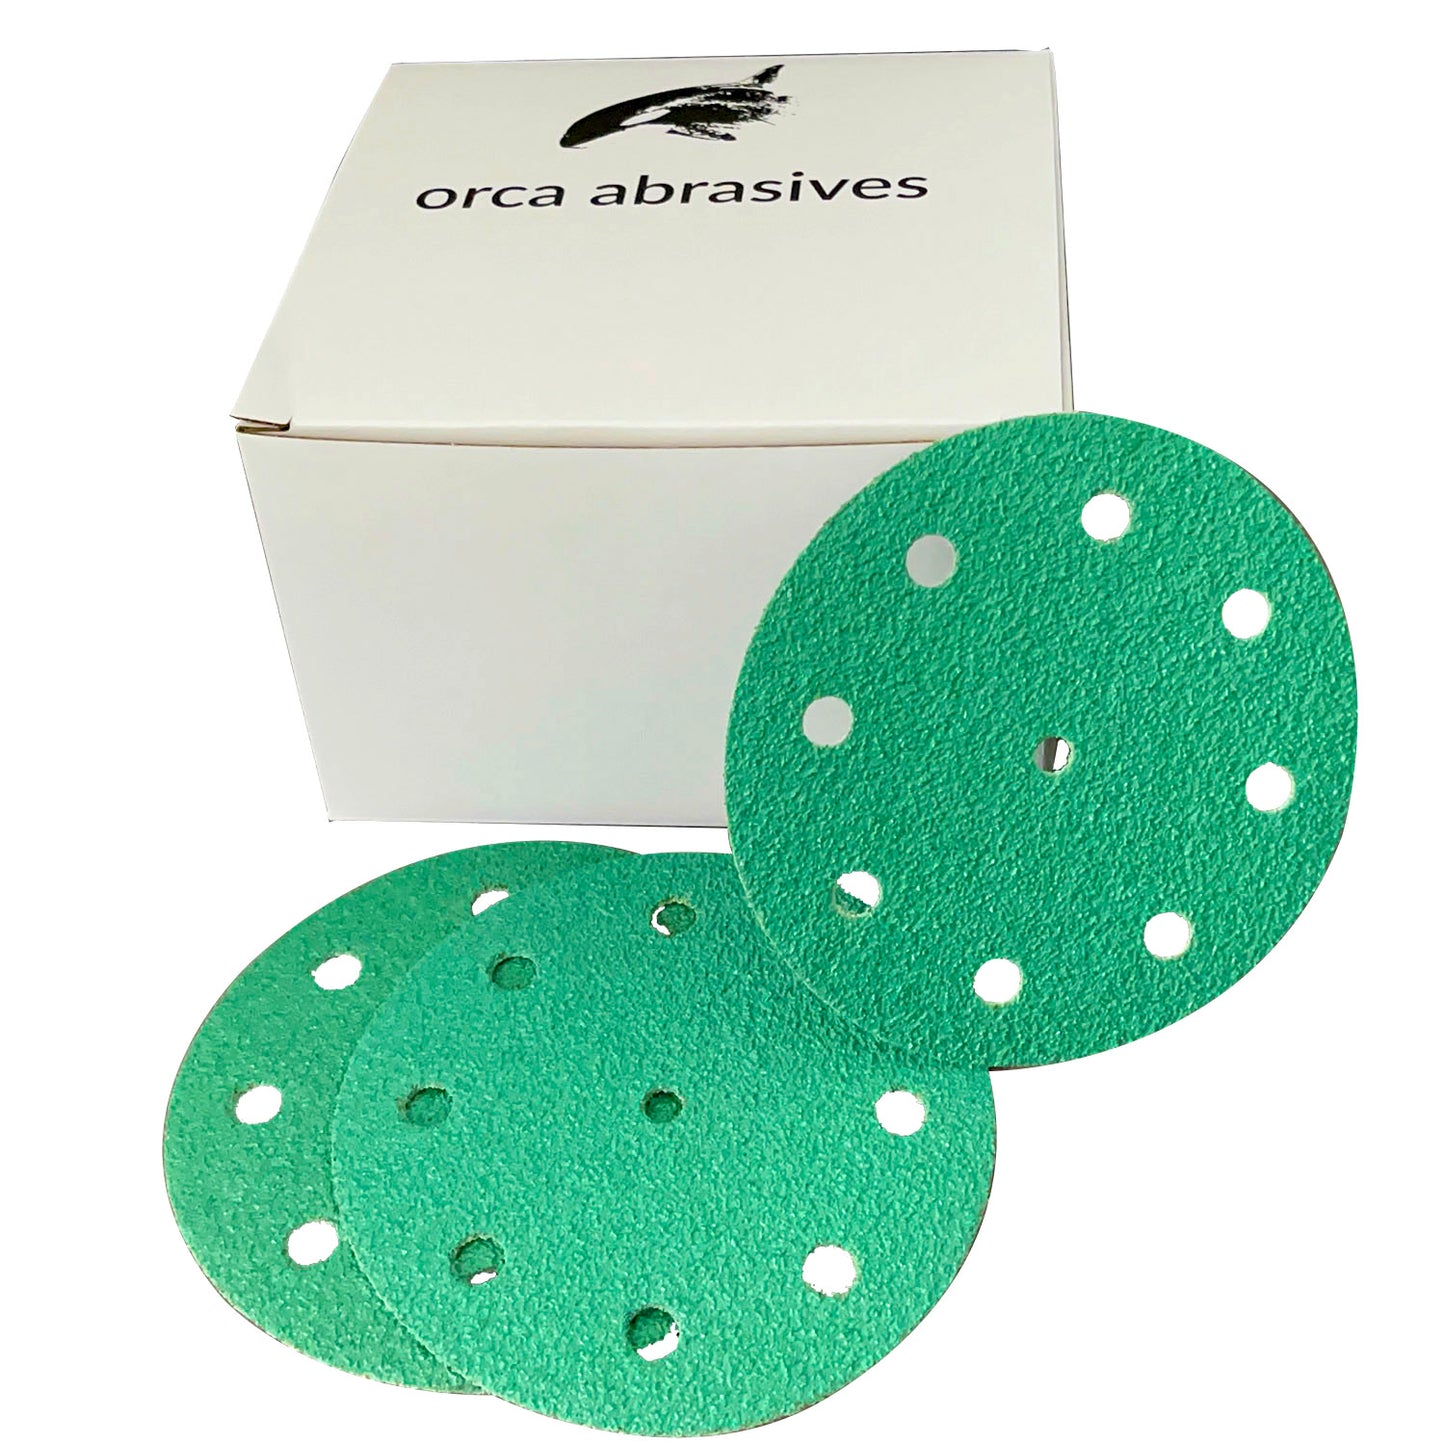 5in Hook & Loop Green Sanding Discs Fits Festool (10 pack)